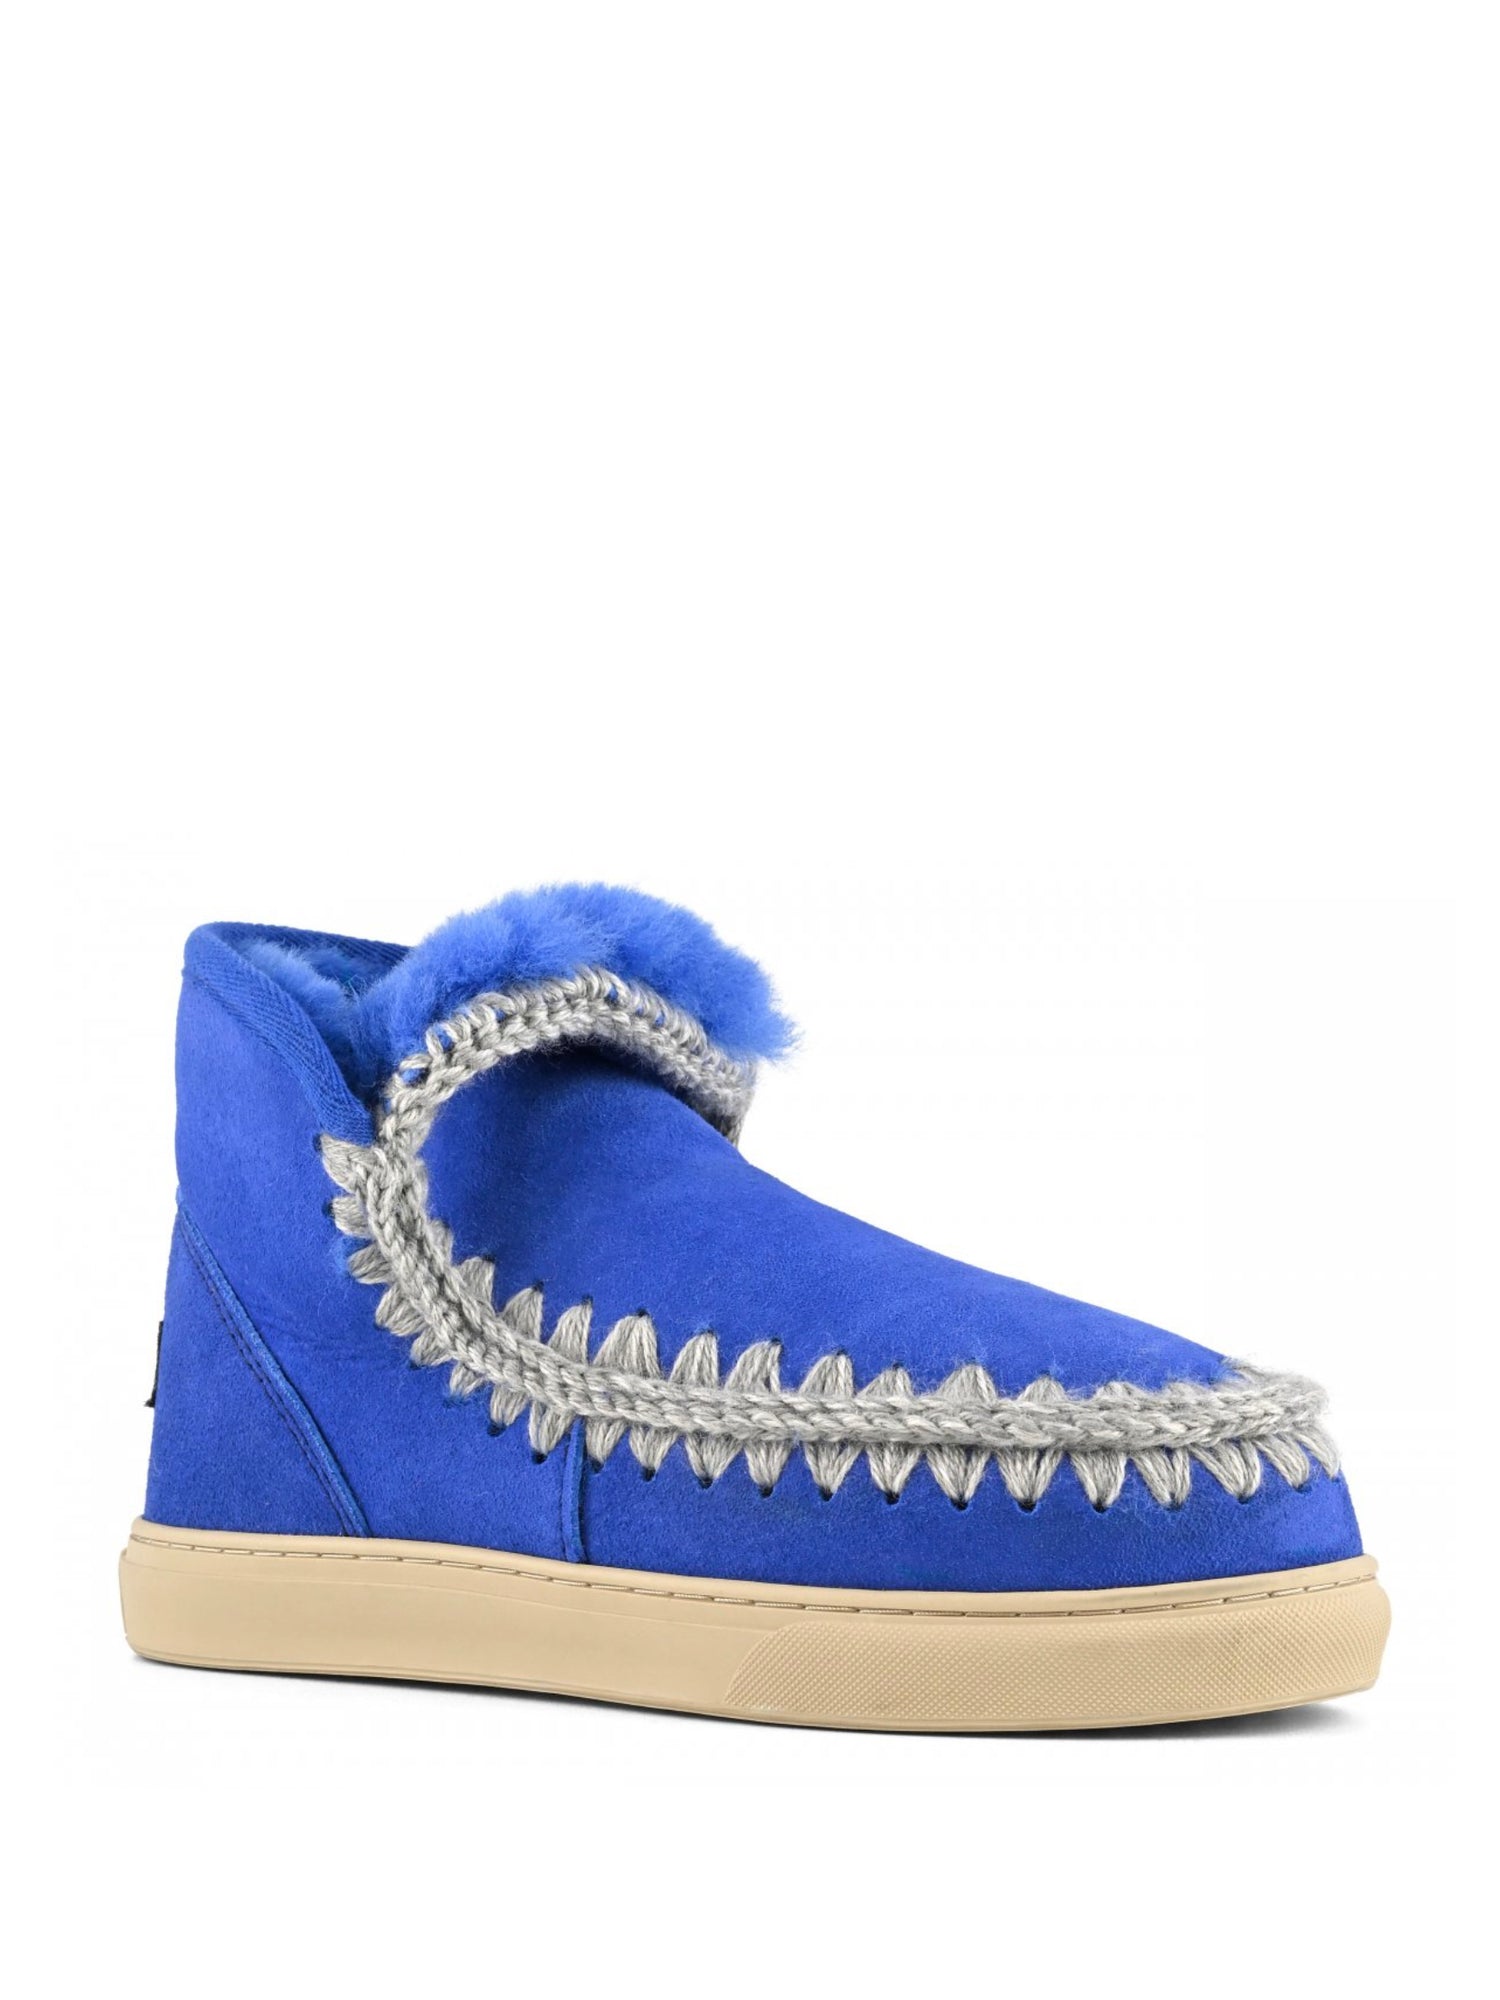 Eskimo sneaker boots, bright blue